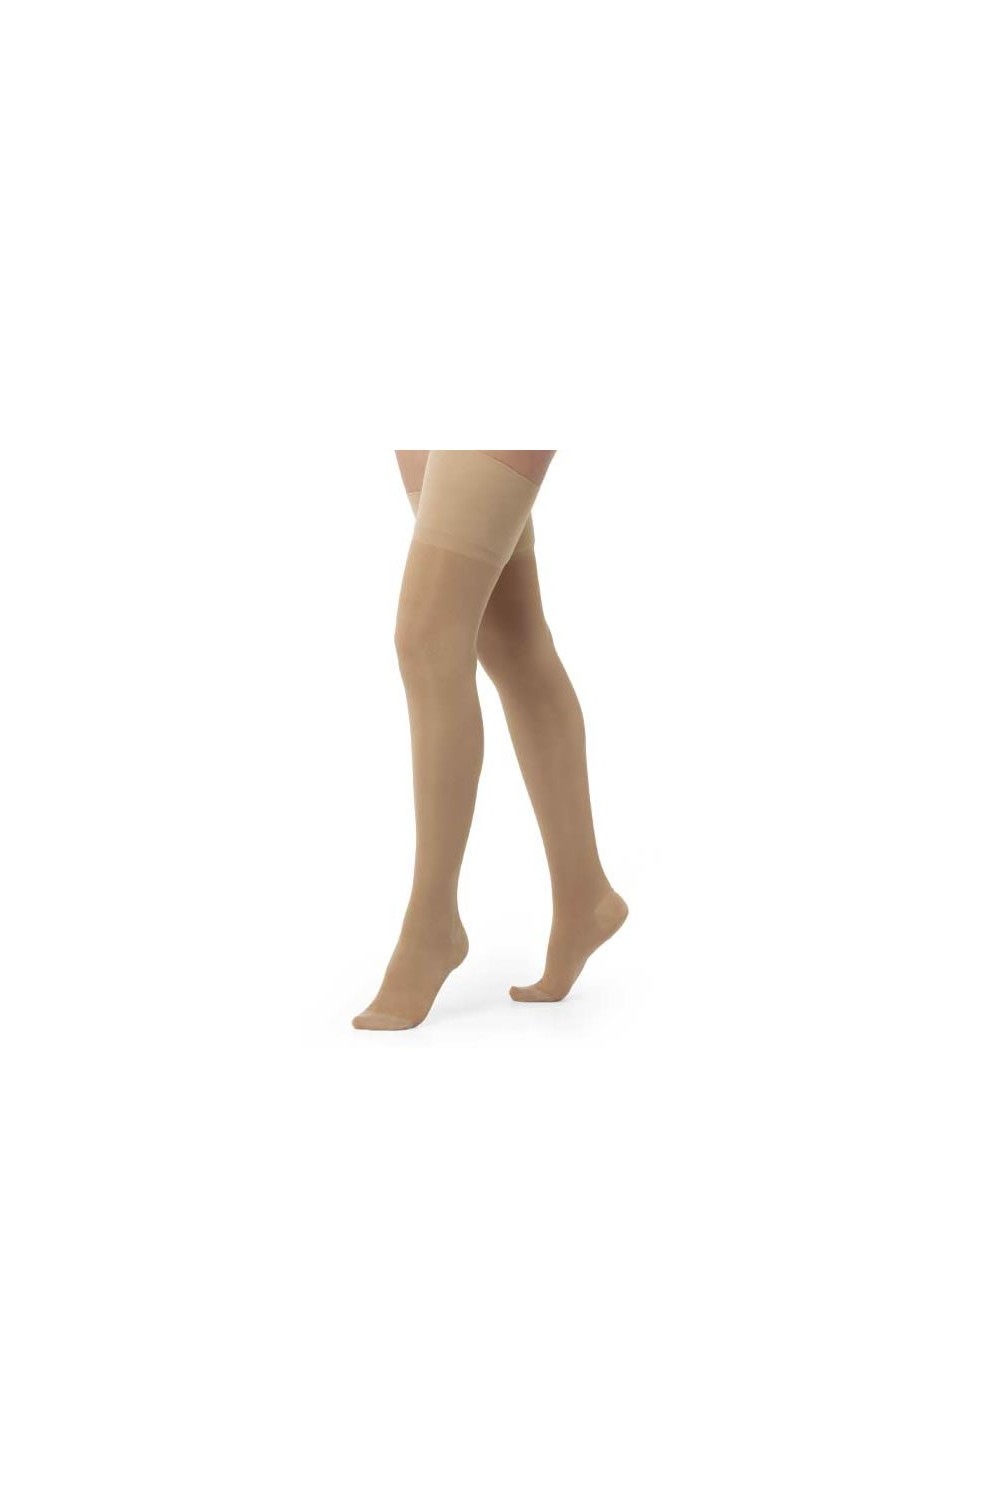 PRIM - Varidol Strong Stocking Pantyhose Small T/2